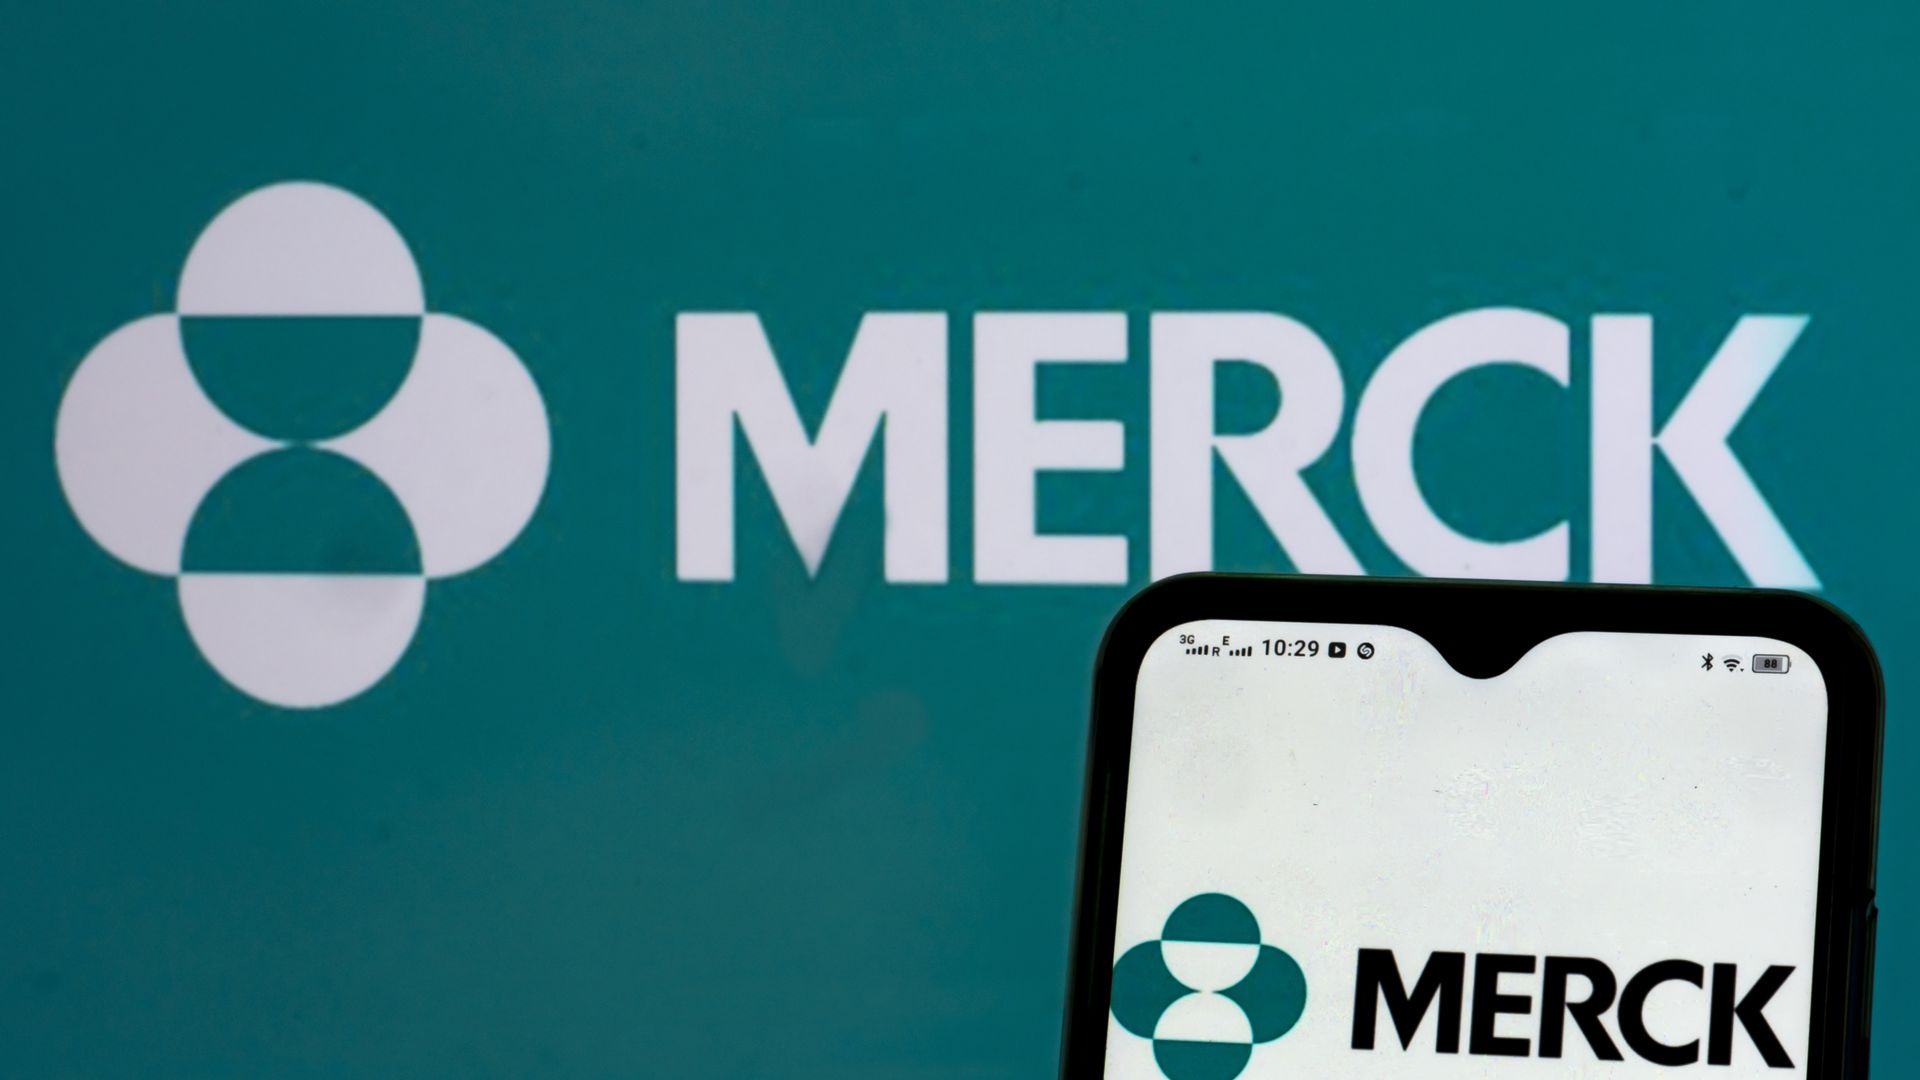 Merck's logo.